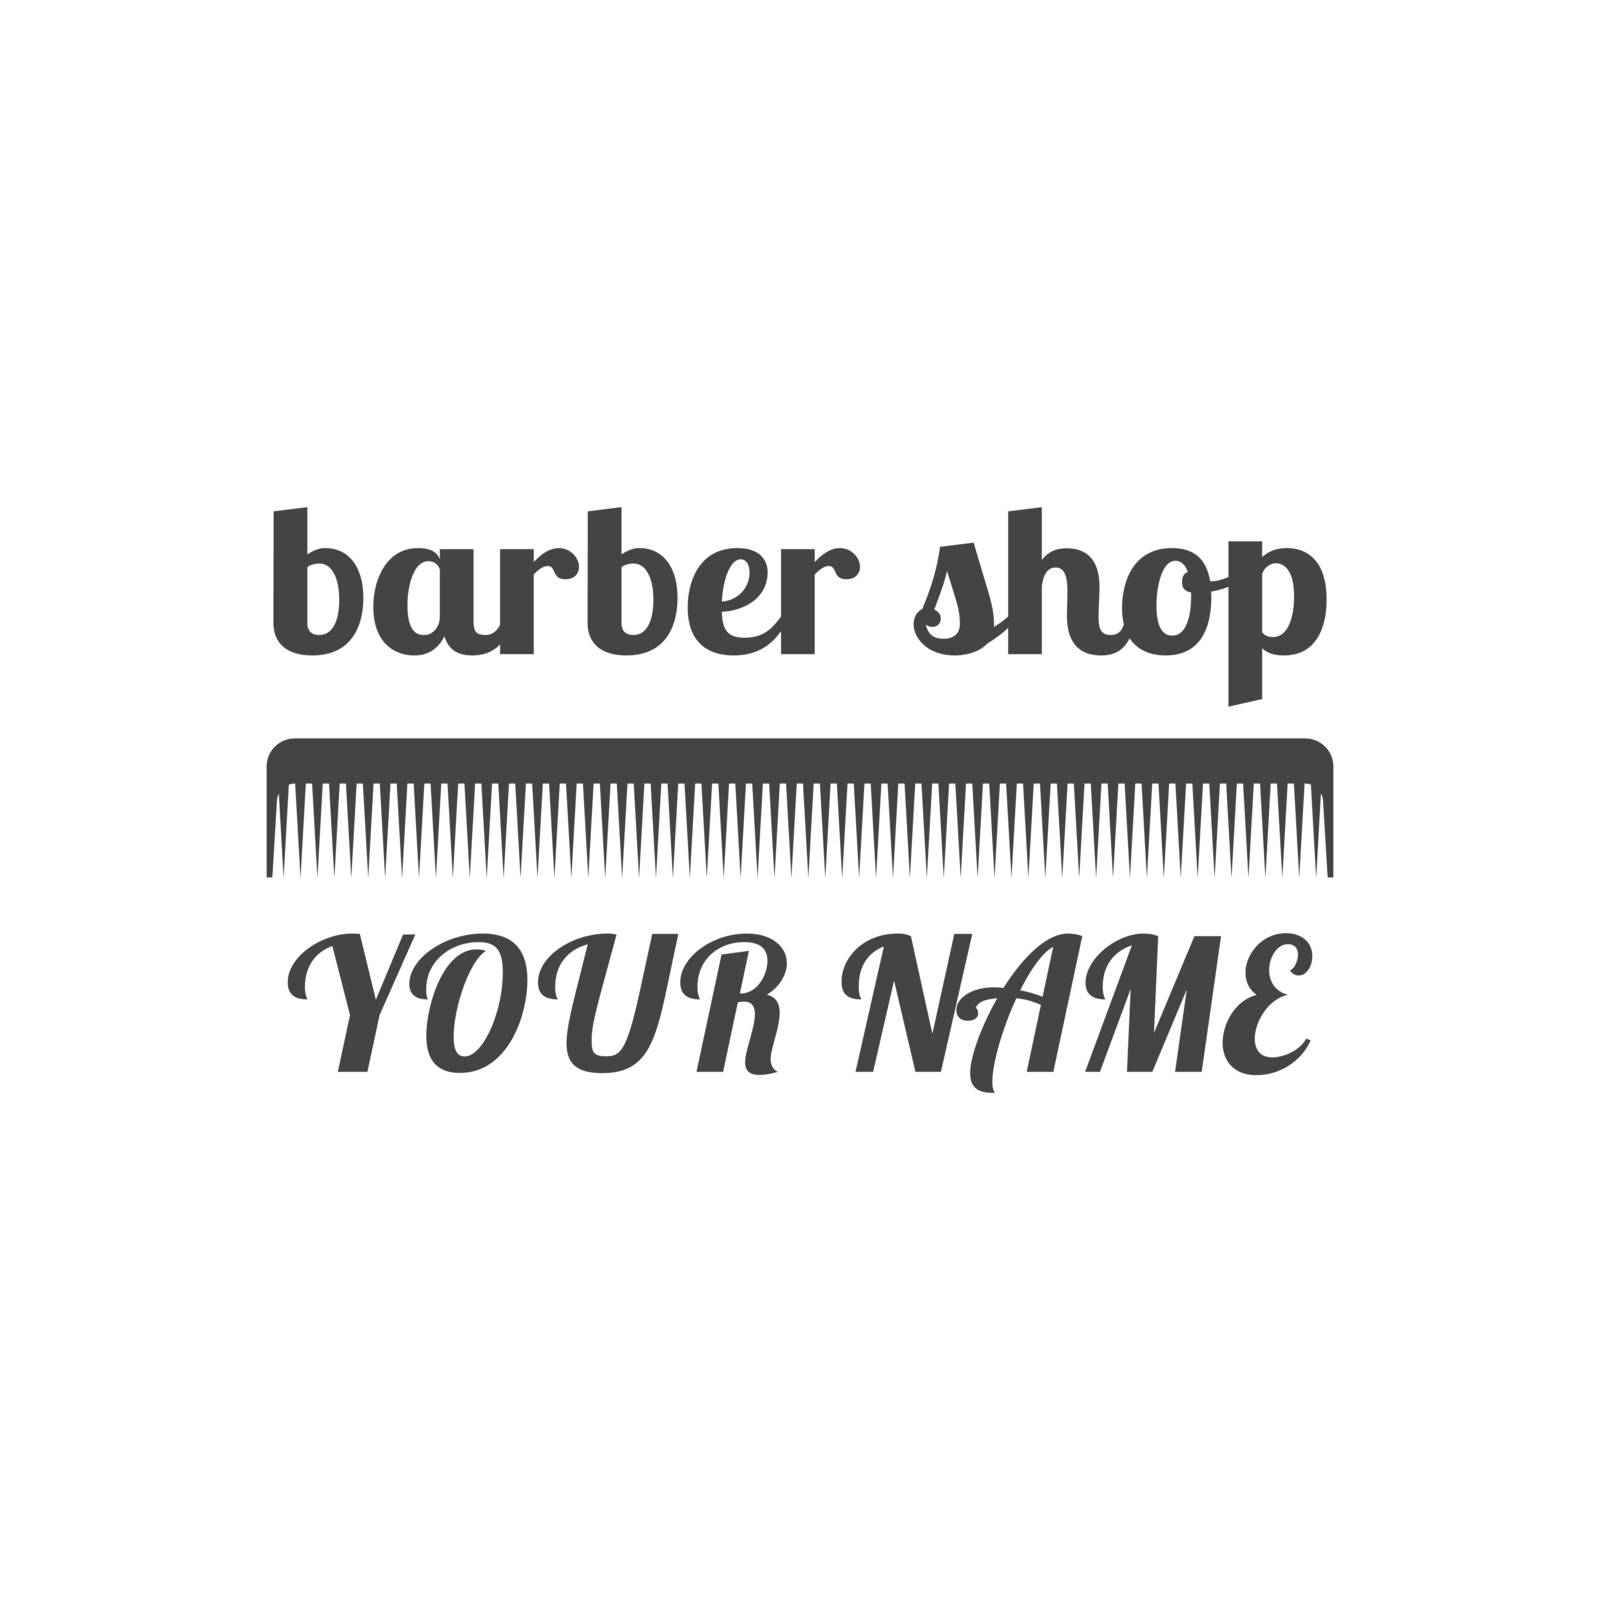 Grey emblem for barber shop, vector illustration. by kup1984